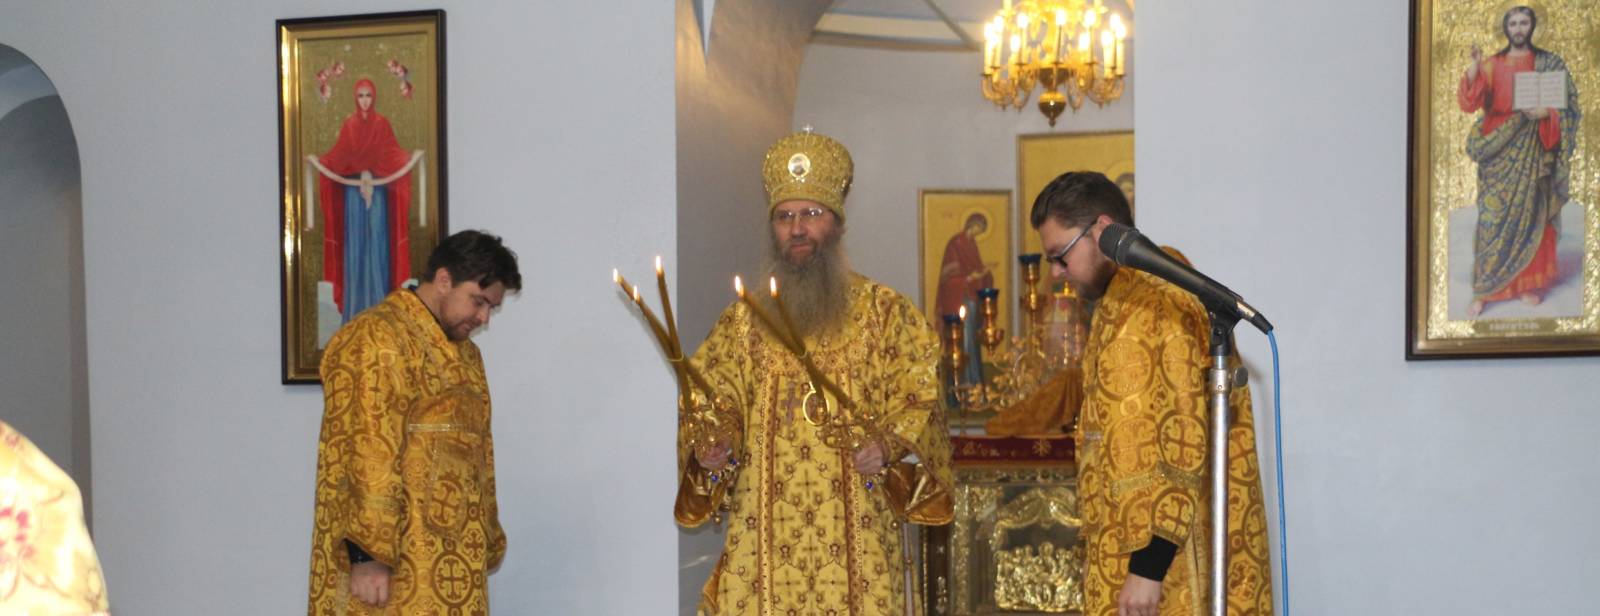 Божественная литургия в Покровском кафедральном соборе г. Урюпинска.